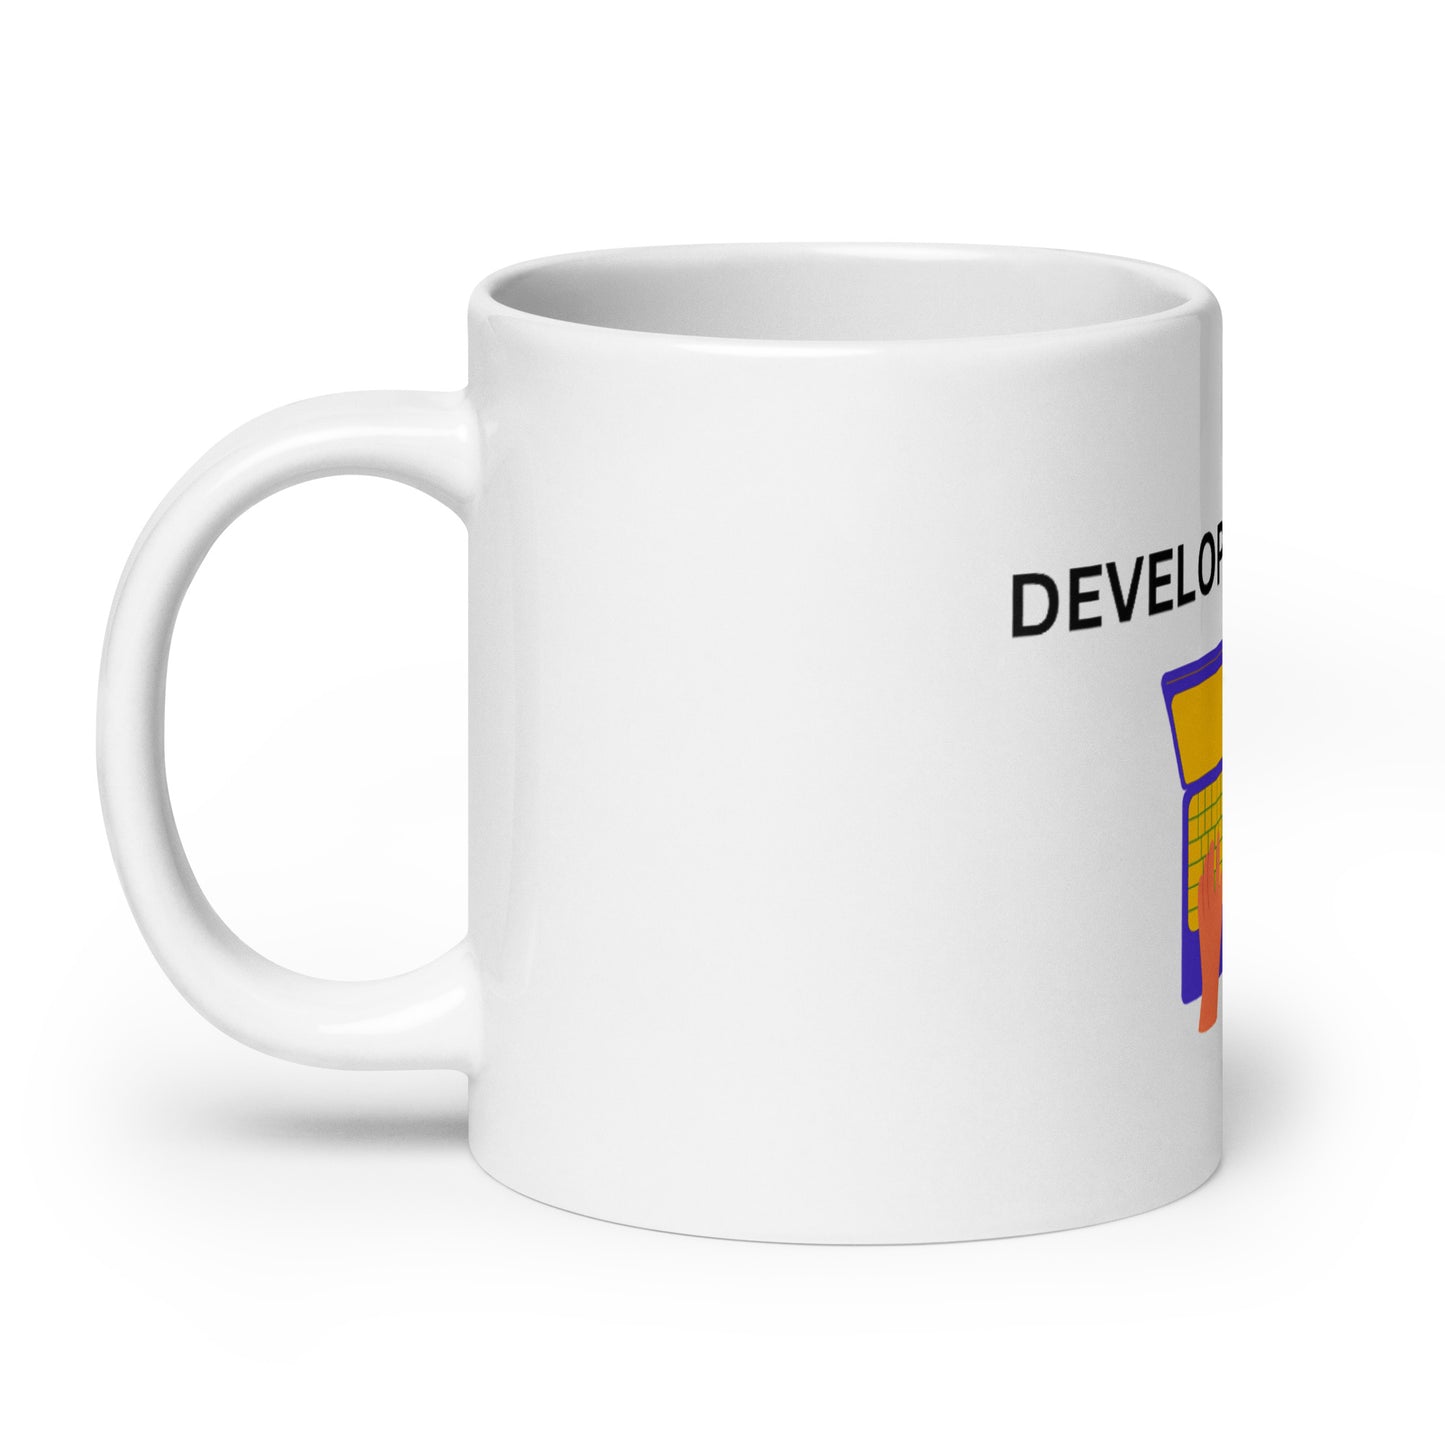 Developer For Life mug